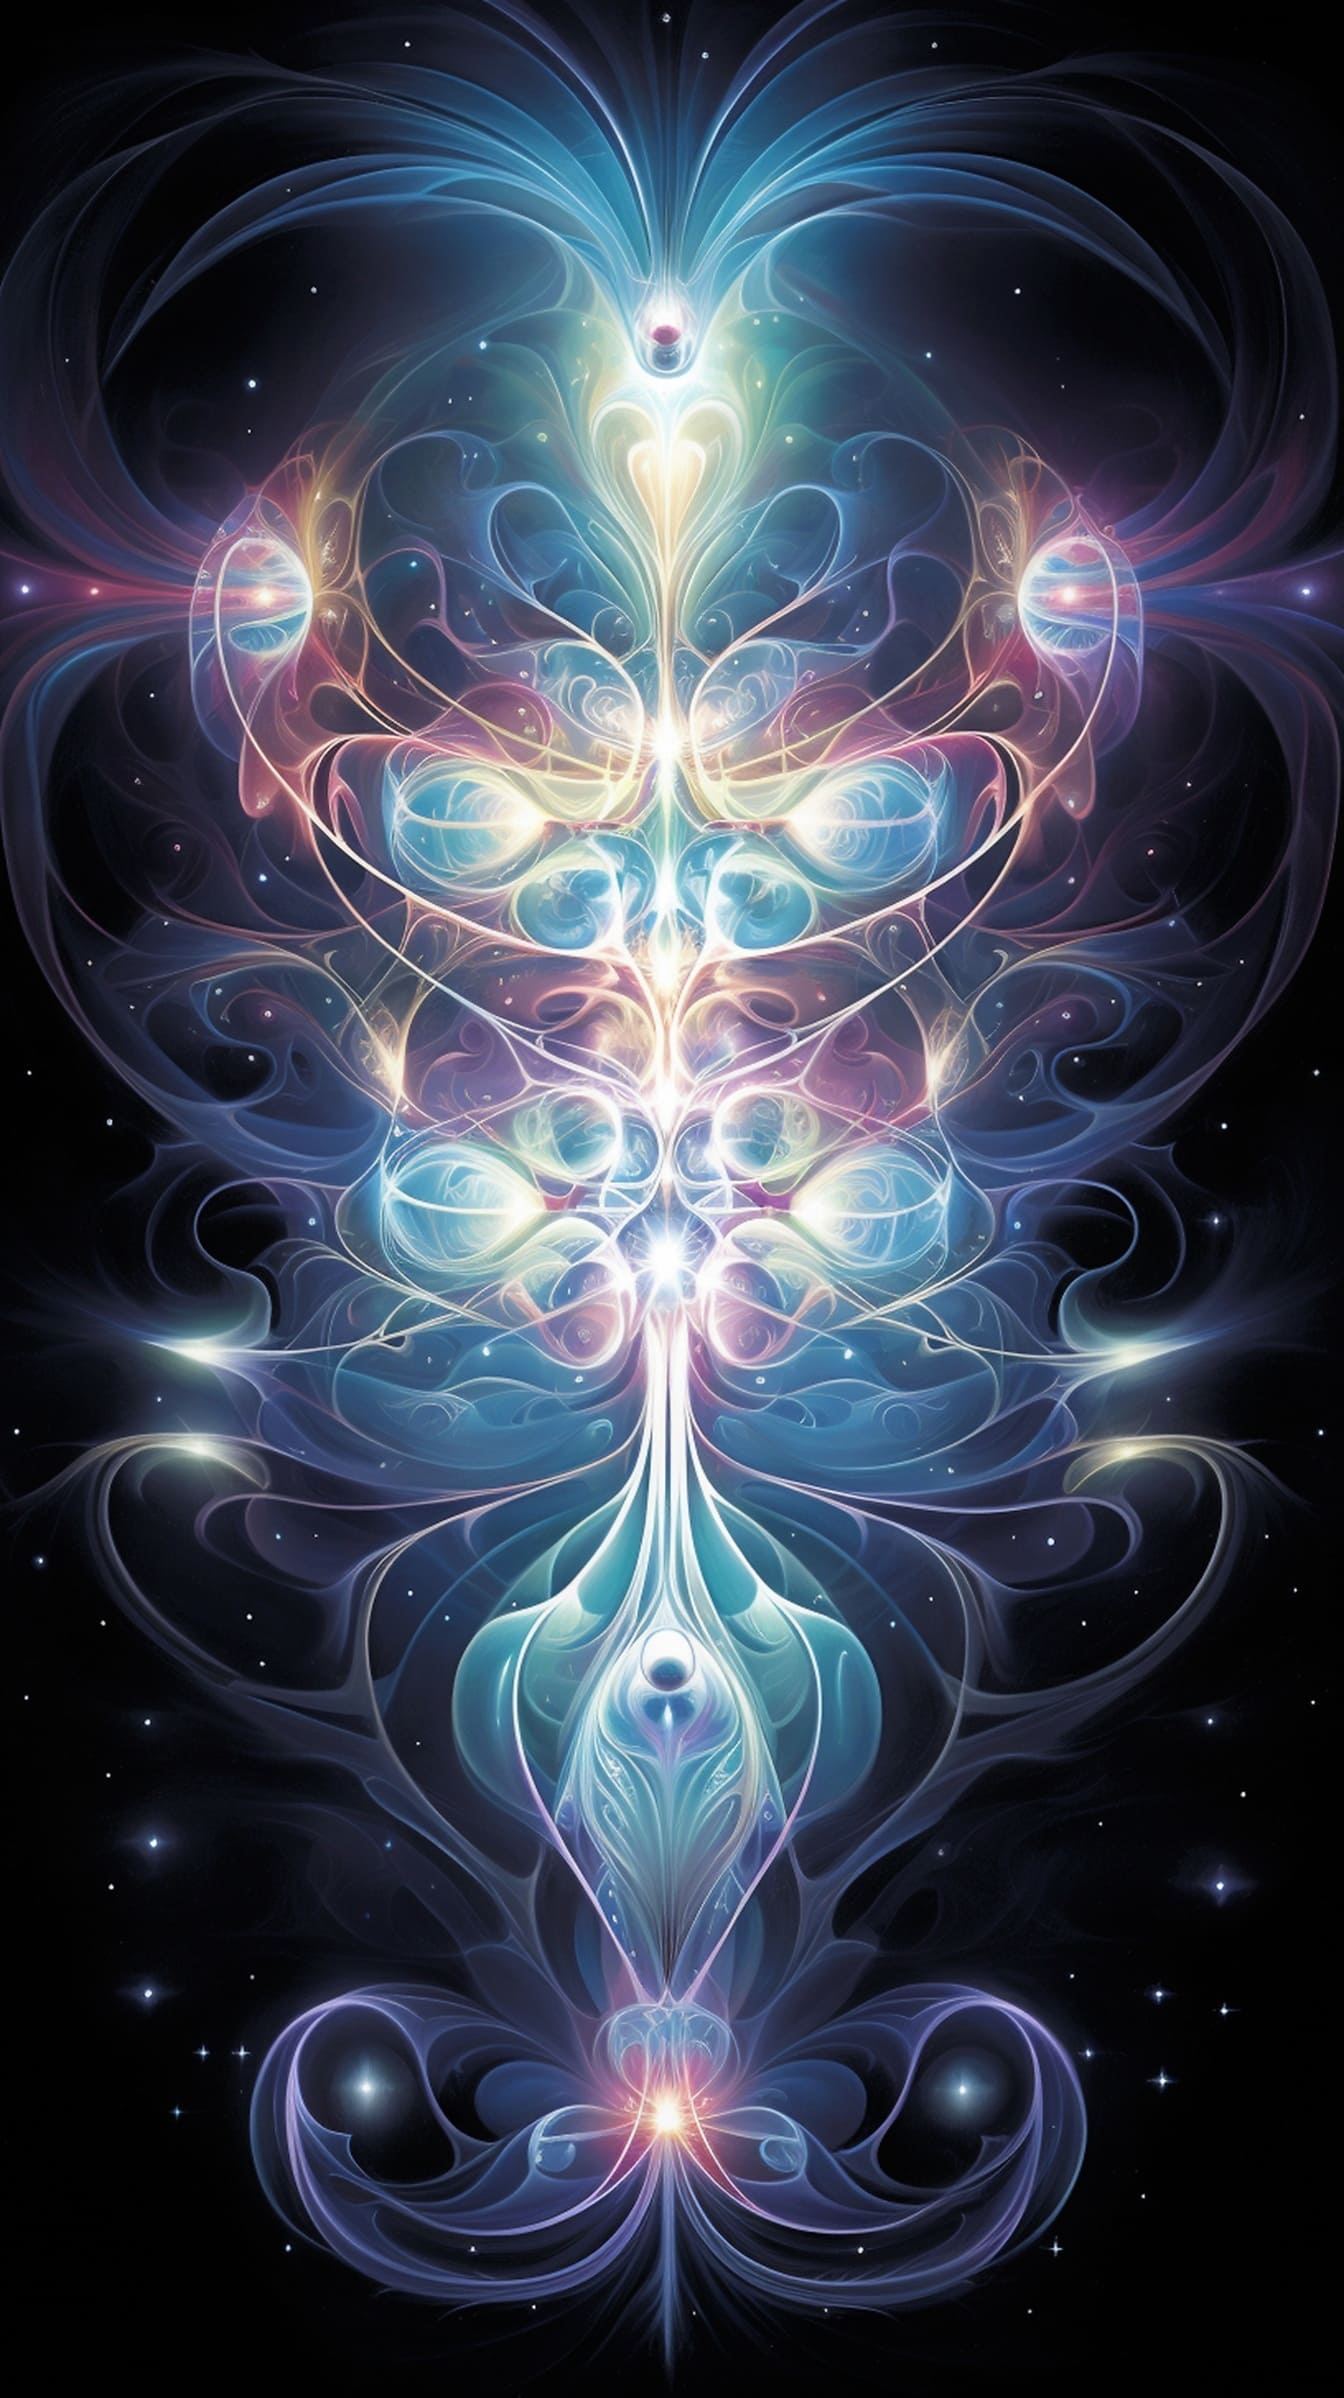 Astrología digital de fantasía ilustración de simetría gráfica abstracta